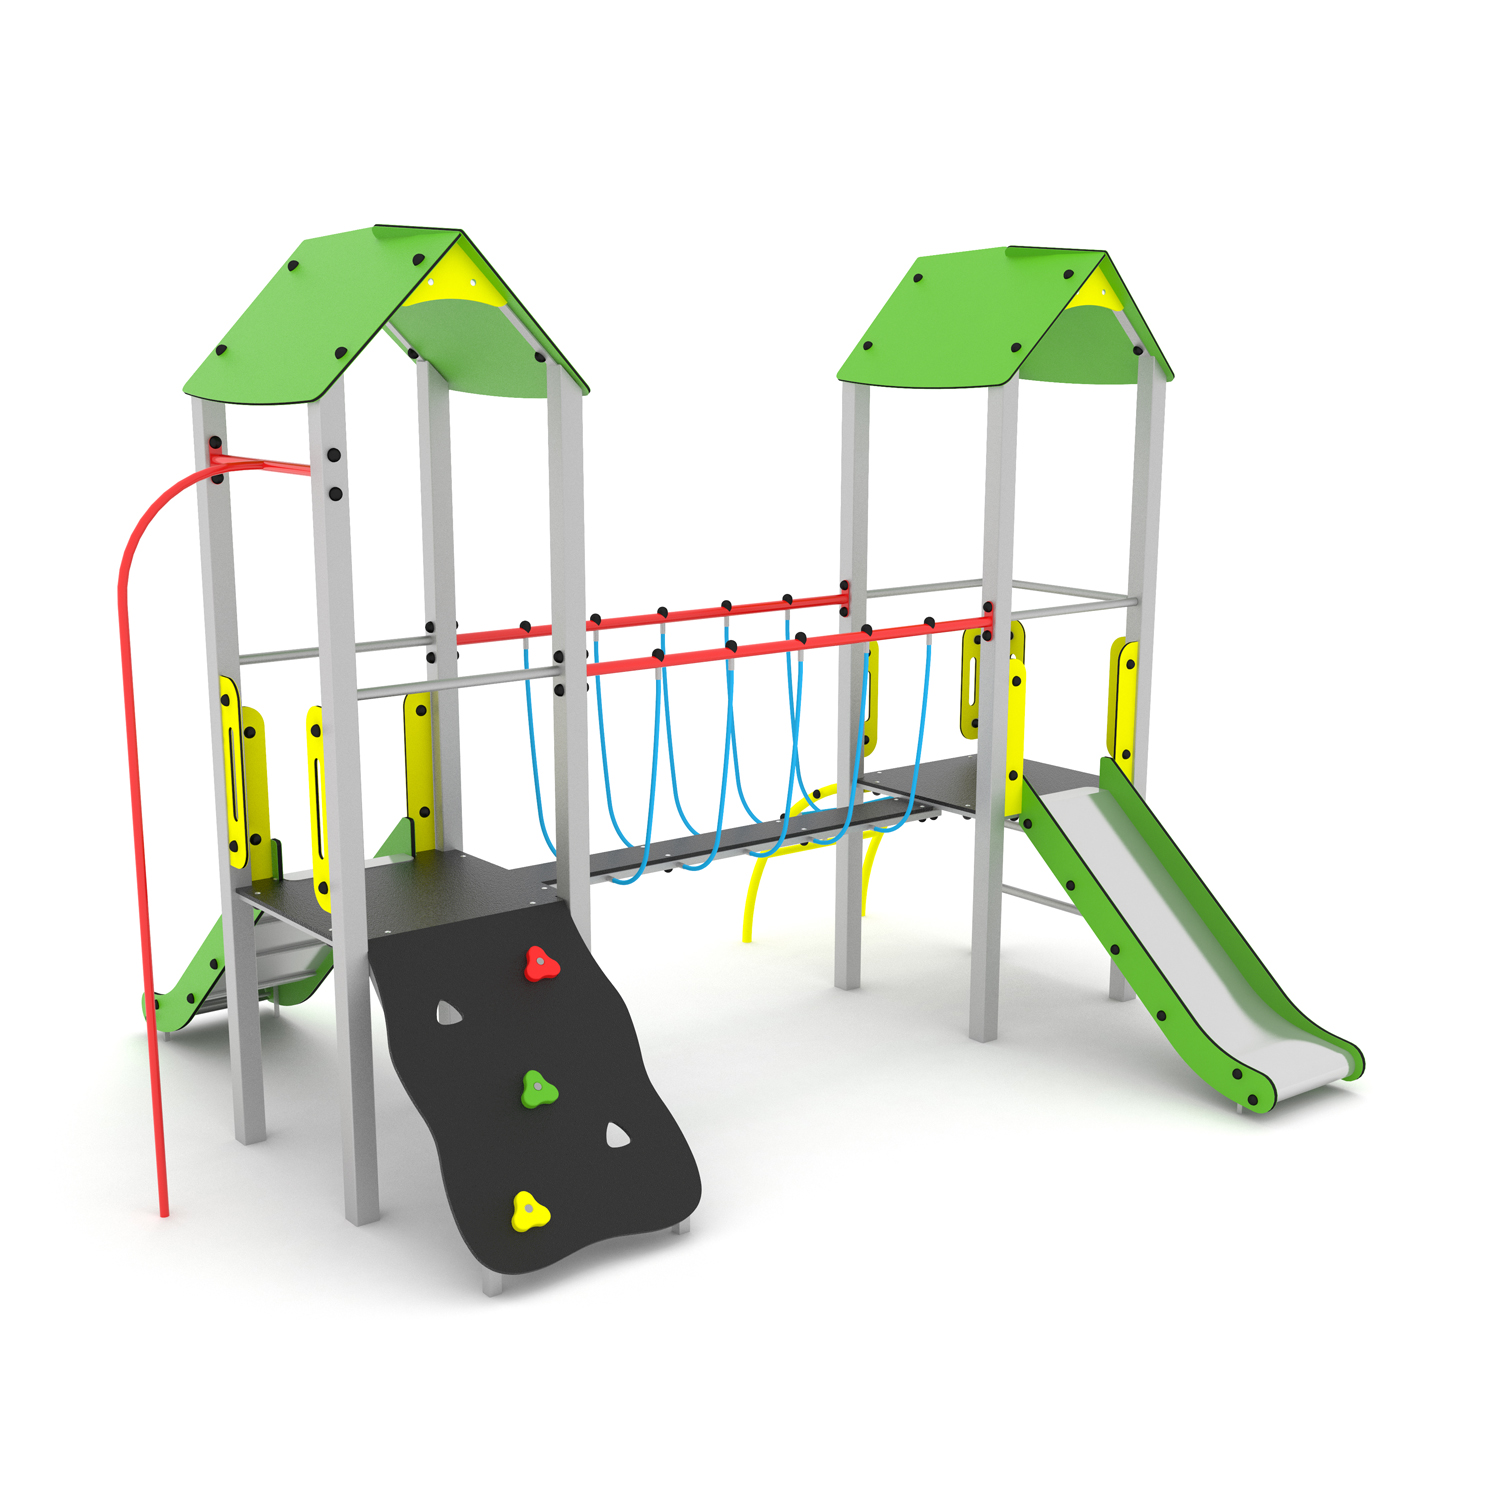 CGS Plieninis daugiafunkcinis vaikų žaidimų aikštelės įrenginys PD-VP-004